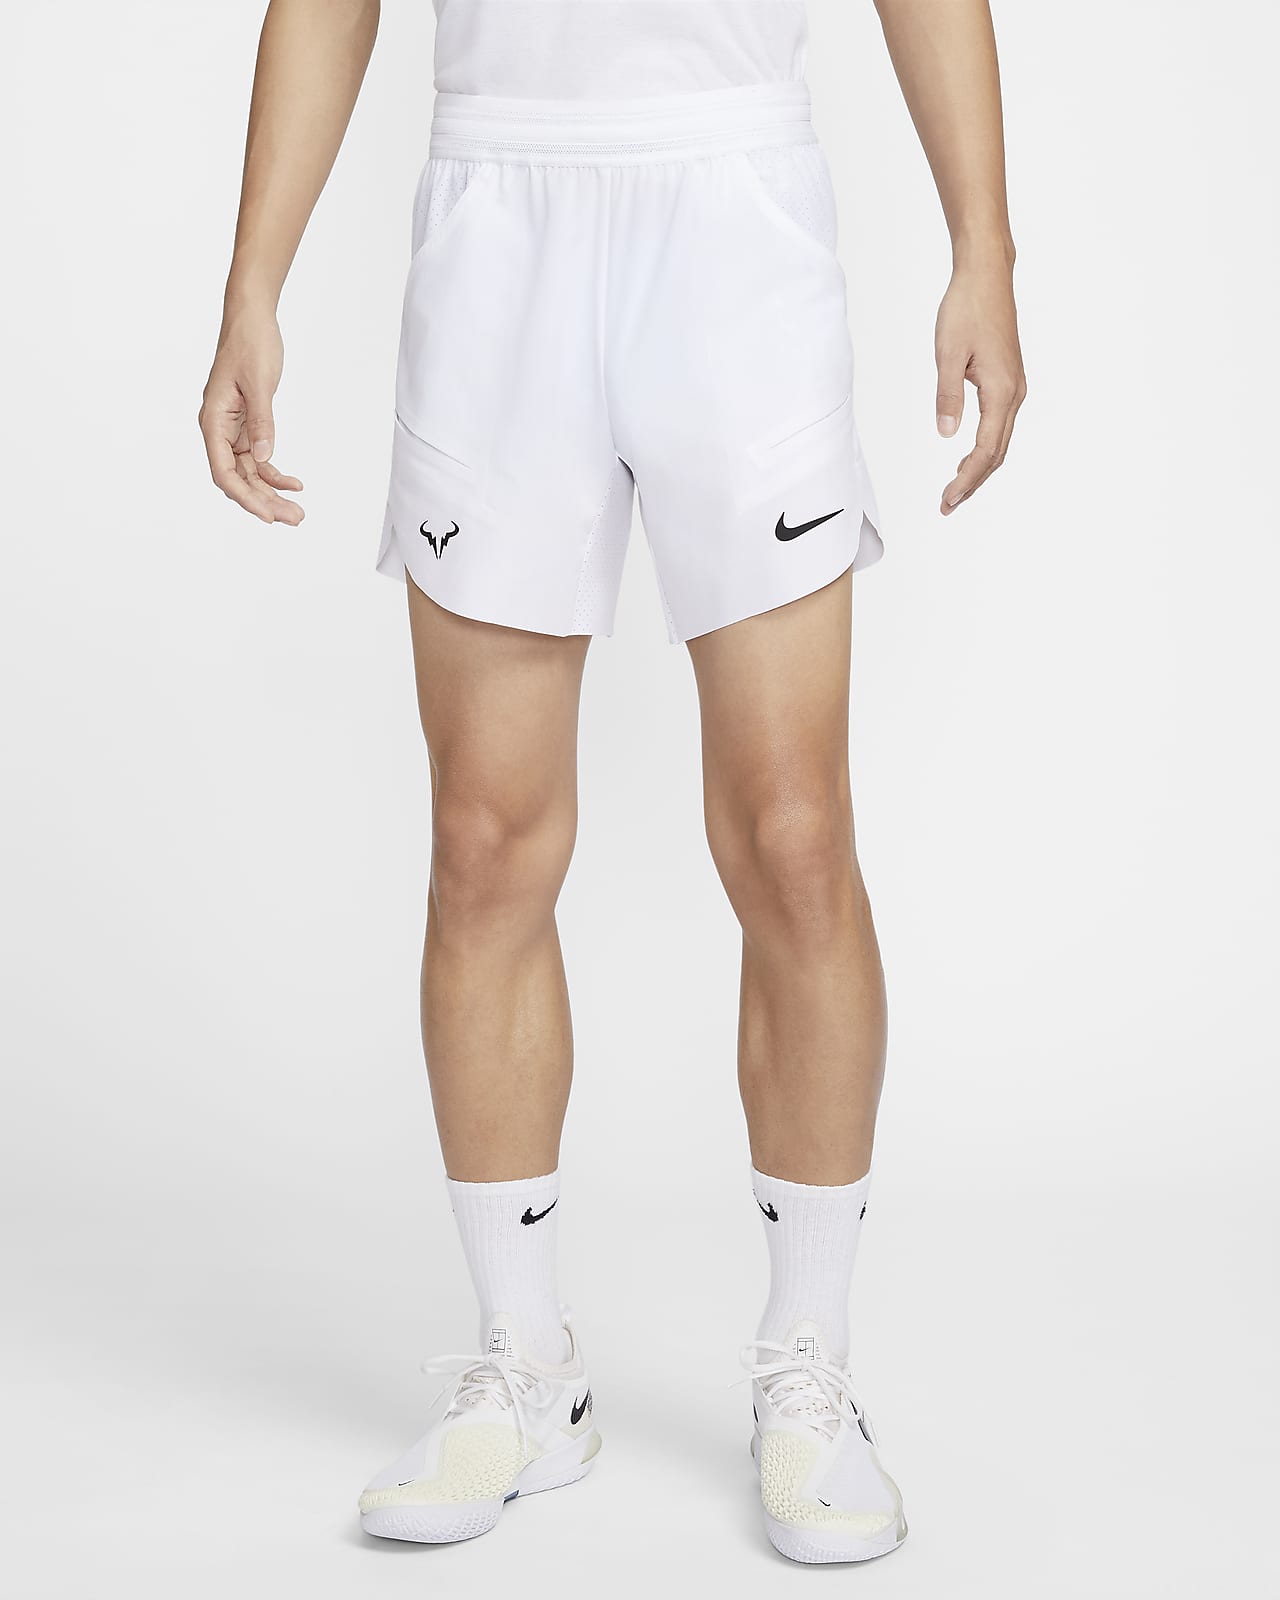 Rafa Nike Dri-FIT ADV 男子速干网球短裤